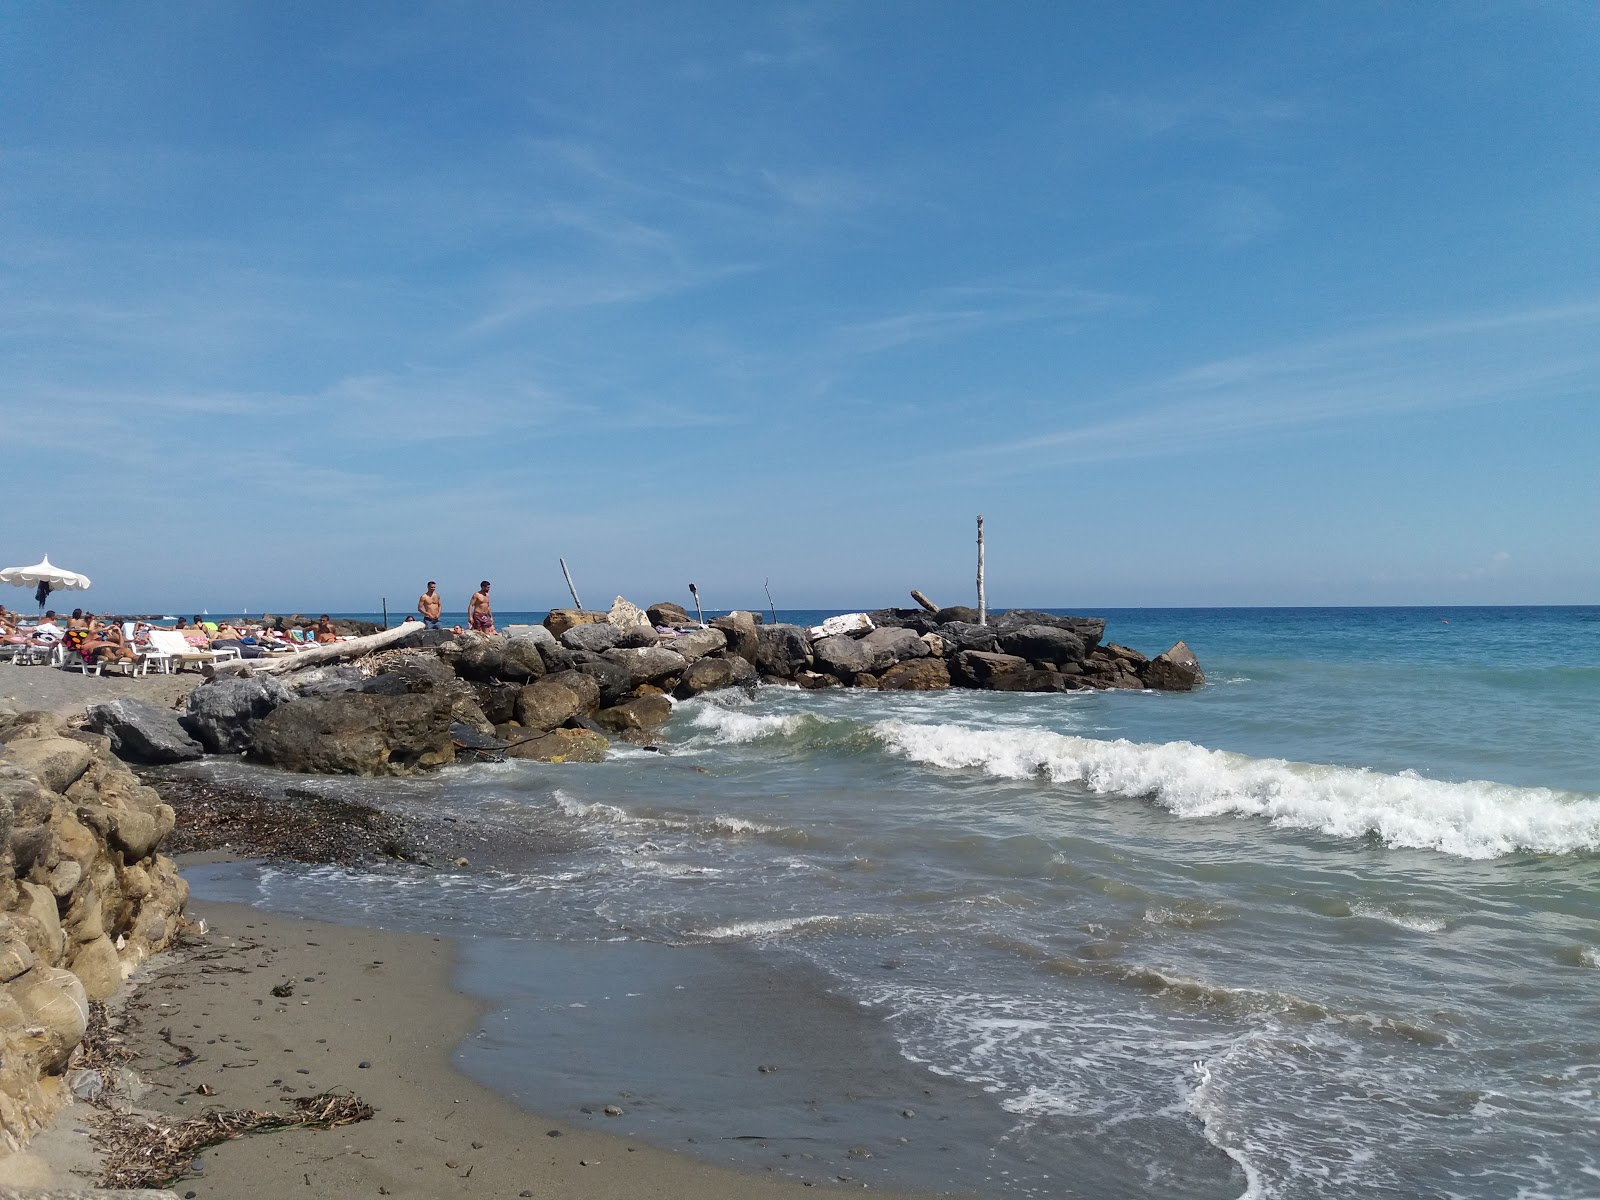 CalApollo'in fotoğrafı gri kum yüzey ile